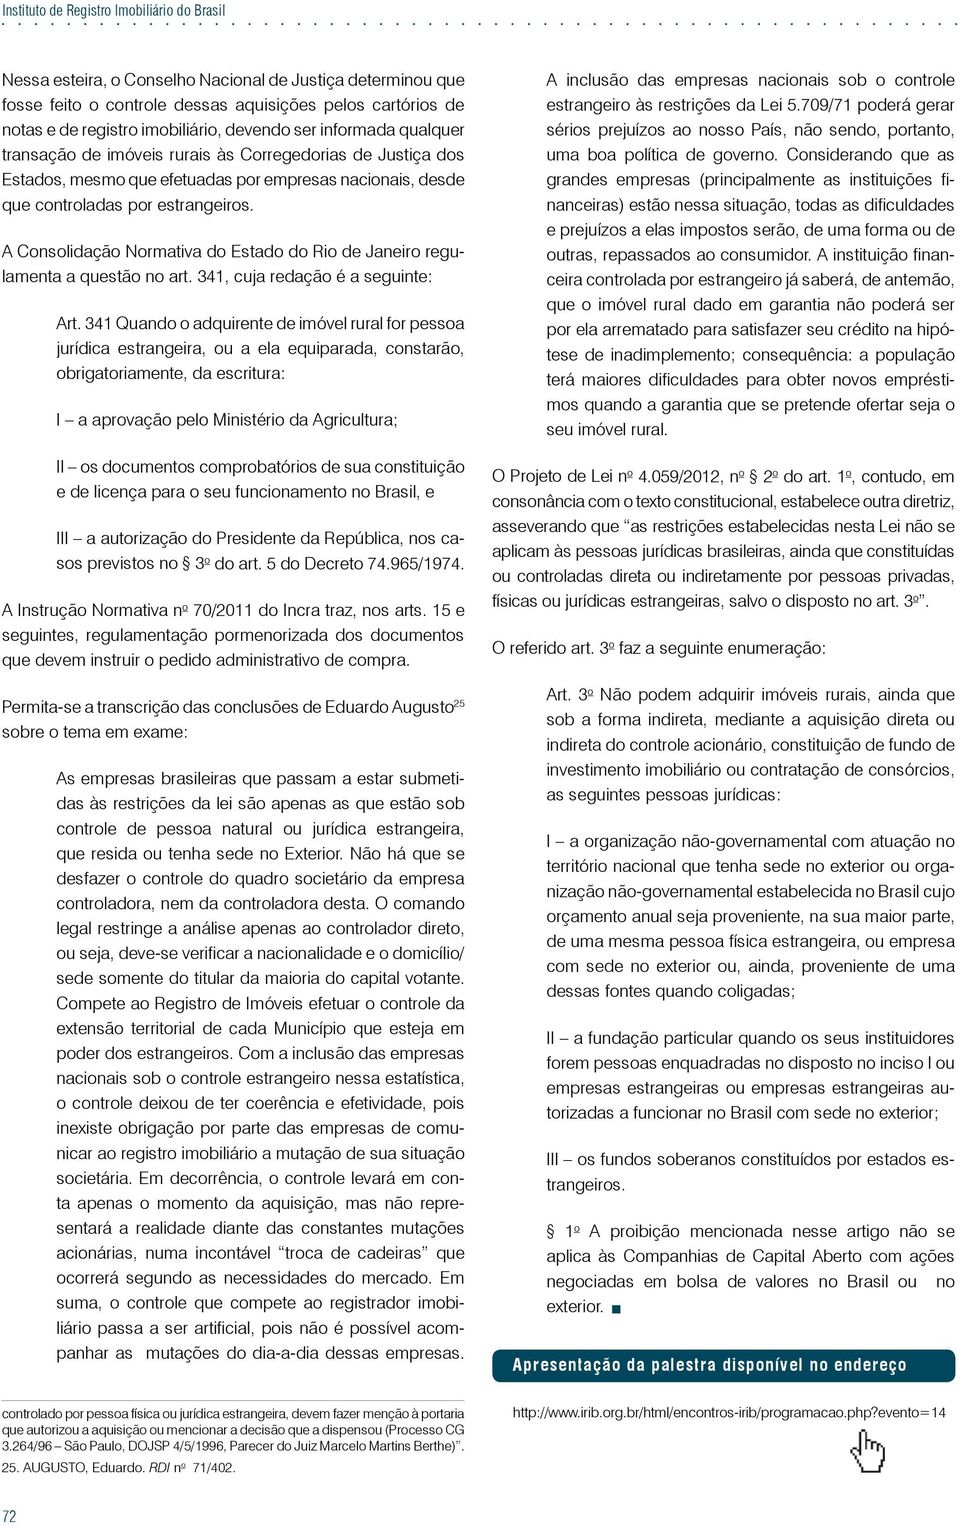 A Consolidação Normativa do Estado do Rio de Janeiro regulamenta a questão no art. 341, cuja redação é a seguinte: Art.